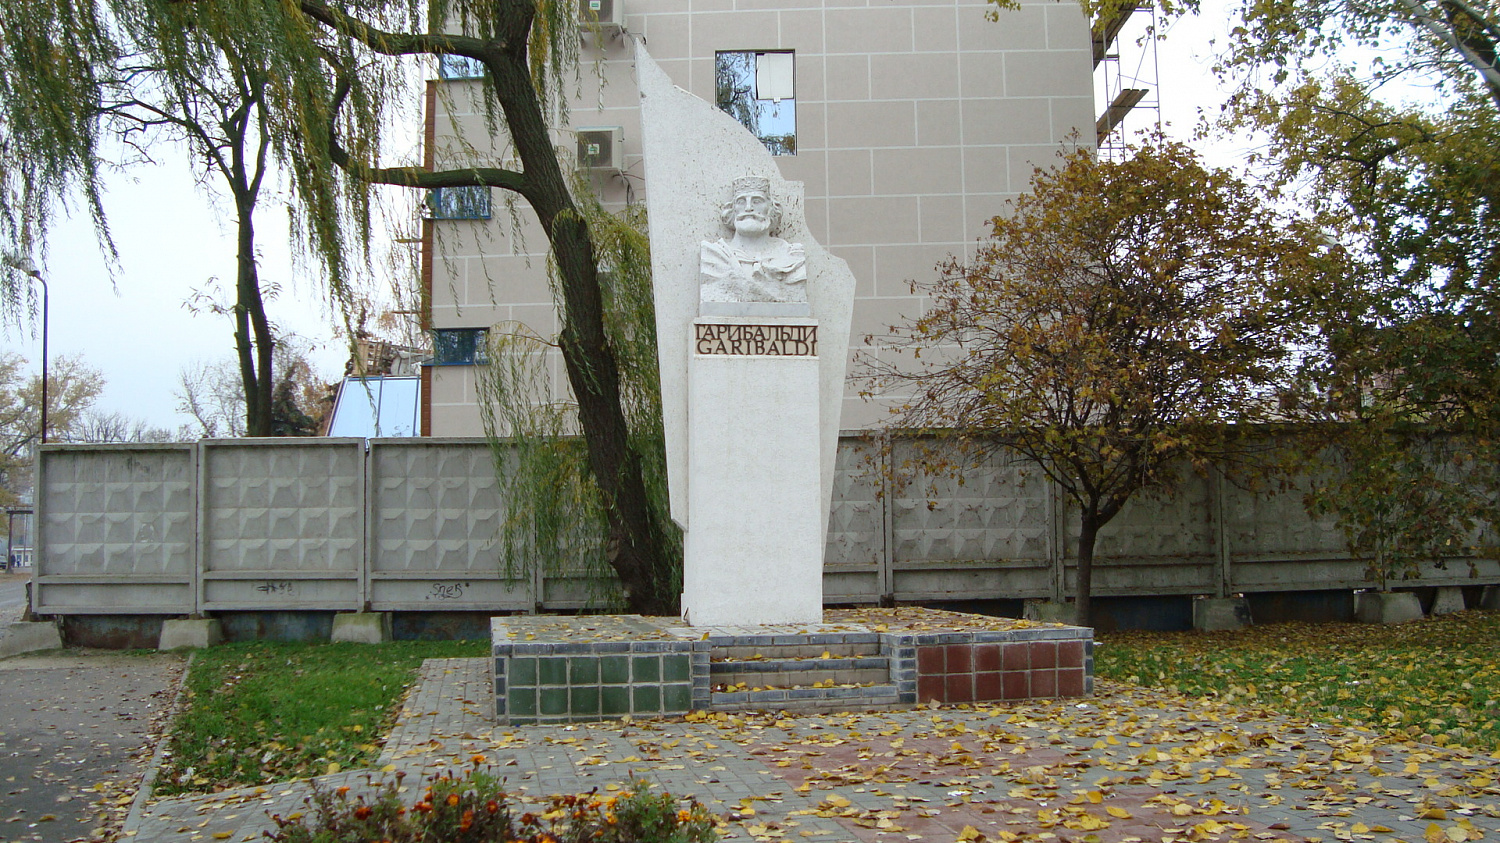 Таганрог. Обелиск Гарибальди 2007 года. Архитектор В. Козлов, скульптор Д. Р. Бегалов